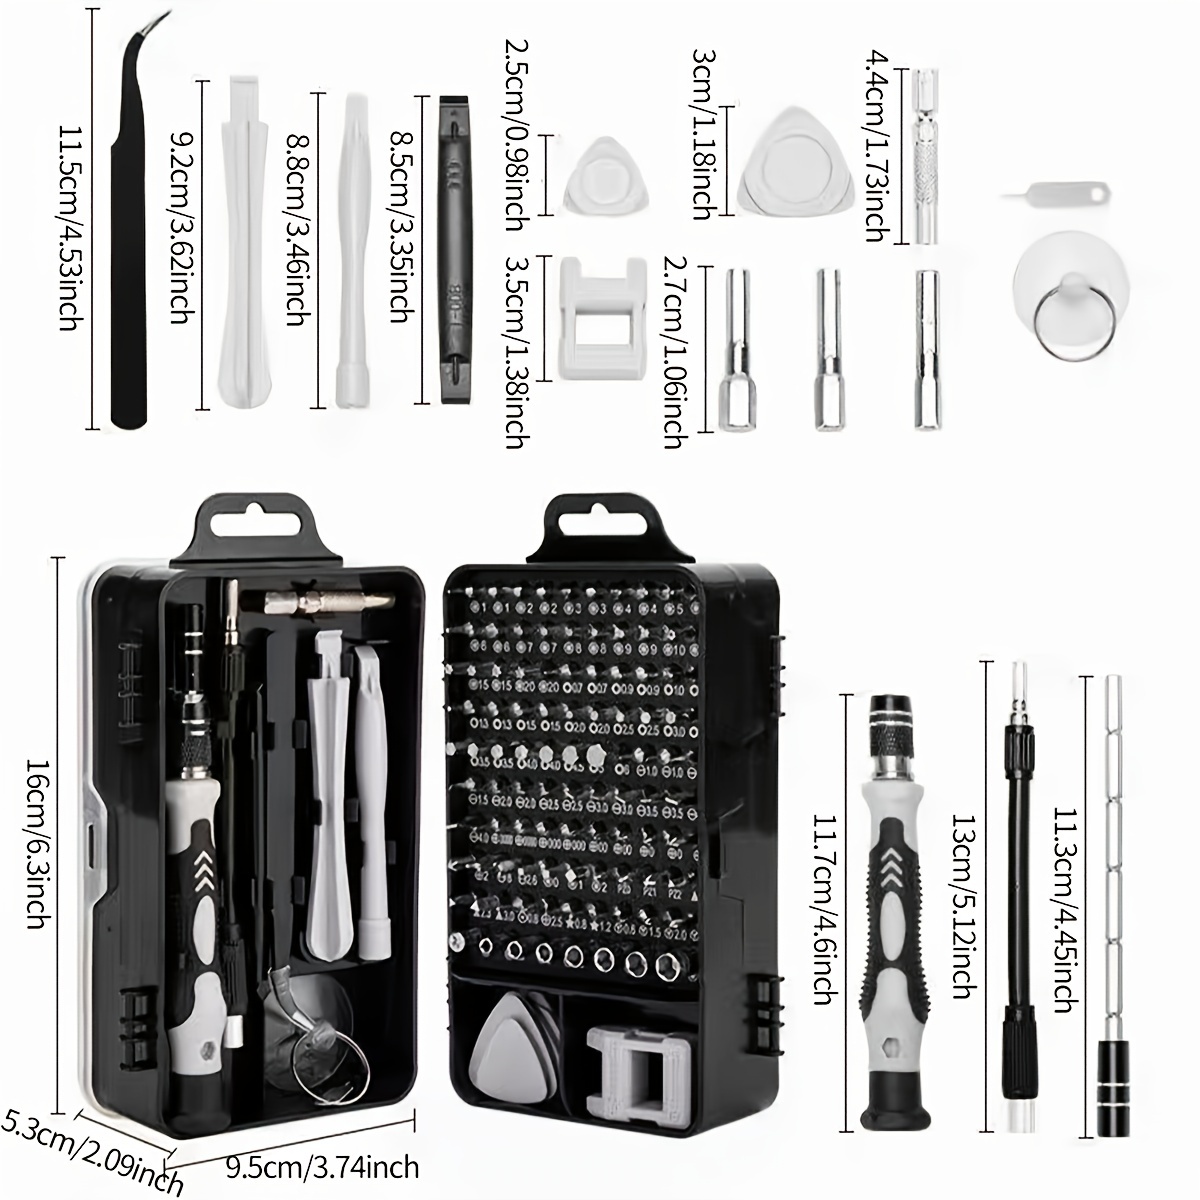 Kit herramientas reparación móviles - Electrónica Rasero ( tienda on line )